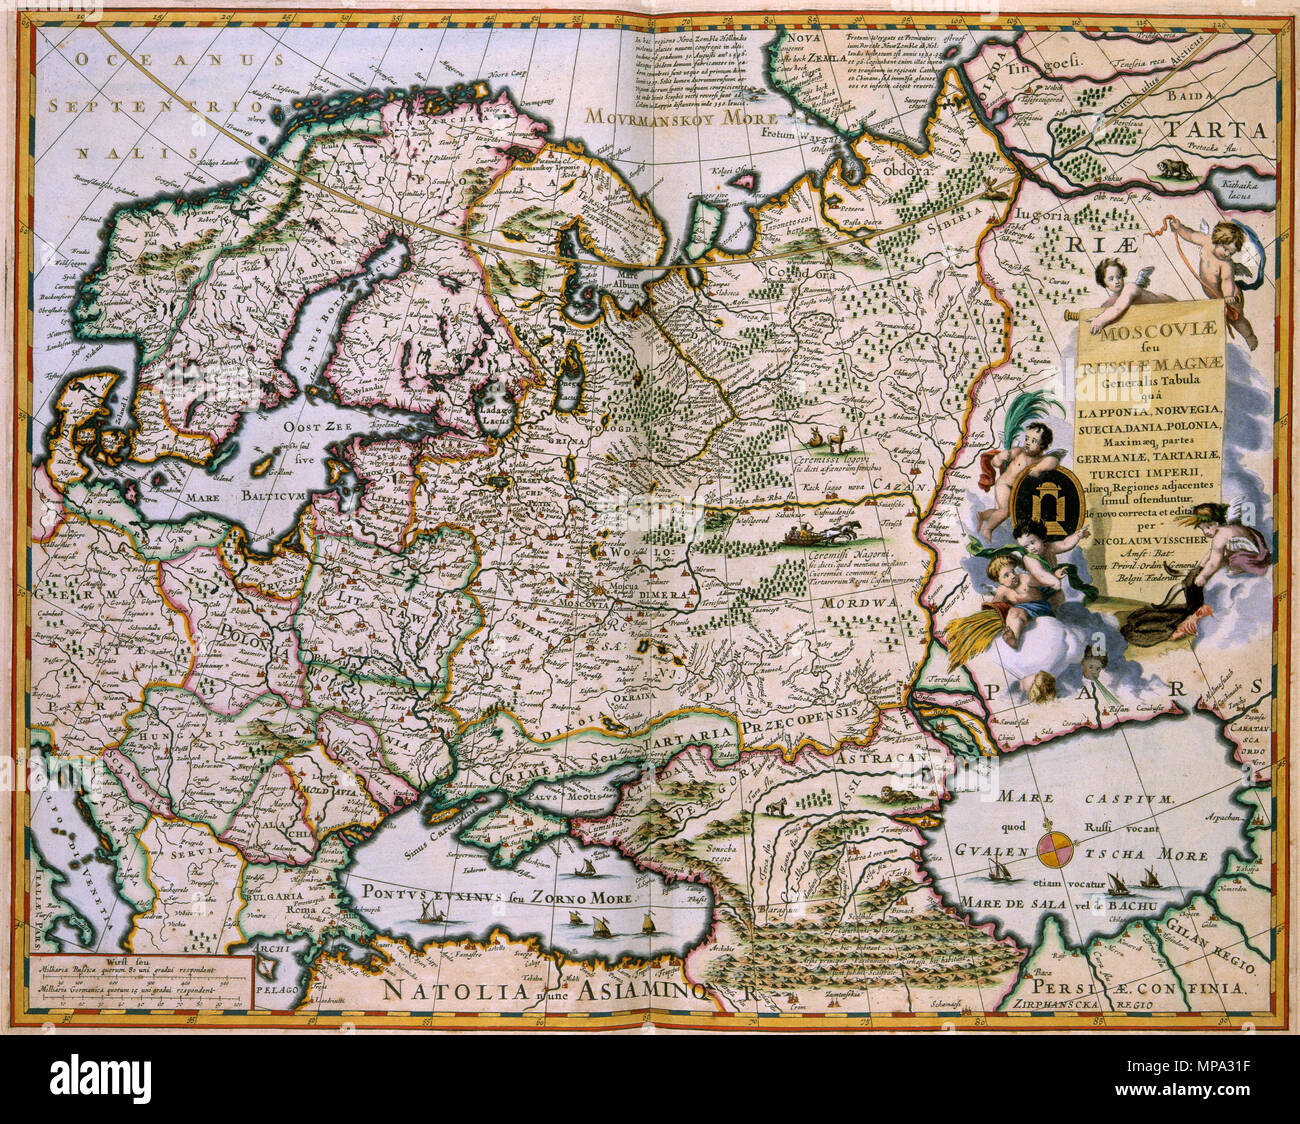 . Latina: MOSCOVIAE MAGNAE Generalis seu RUSSIAE" Tabula quâ LAPPONIA, NORVEGIA SUECIA, DANIA, POLONIA, Maximaeq: partes GERMANIAE, TARTARIAE, TURCICI IMPERII, aliaeq: simul ostenduntur adjacentes Regiones de-novo-Correcta et Edita. Diese Karte von West-Russia wurde am Ende des 17. Jahrhunderts von Nicolaes Visscher II veröffentlicht (1649-1702). Niederländische und Französische Karten aus der Mitte des 17. Jahrhunderts Englisch: Karte von Russland von Nicolaas Visscher II (1649-1702) Русский: карта России Николааса Фишера II (1649-1702). 1681. Nicolaas Visscher II (1649-1702) 1241 Visscher Moscoviae seu Russiae" magnae Allgemein Stockfoto